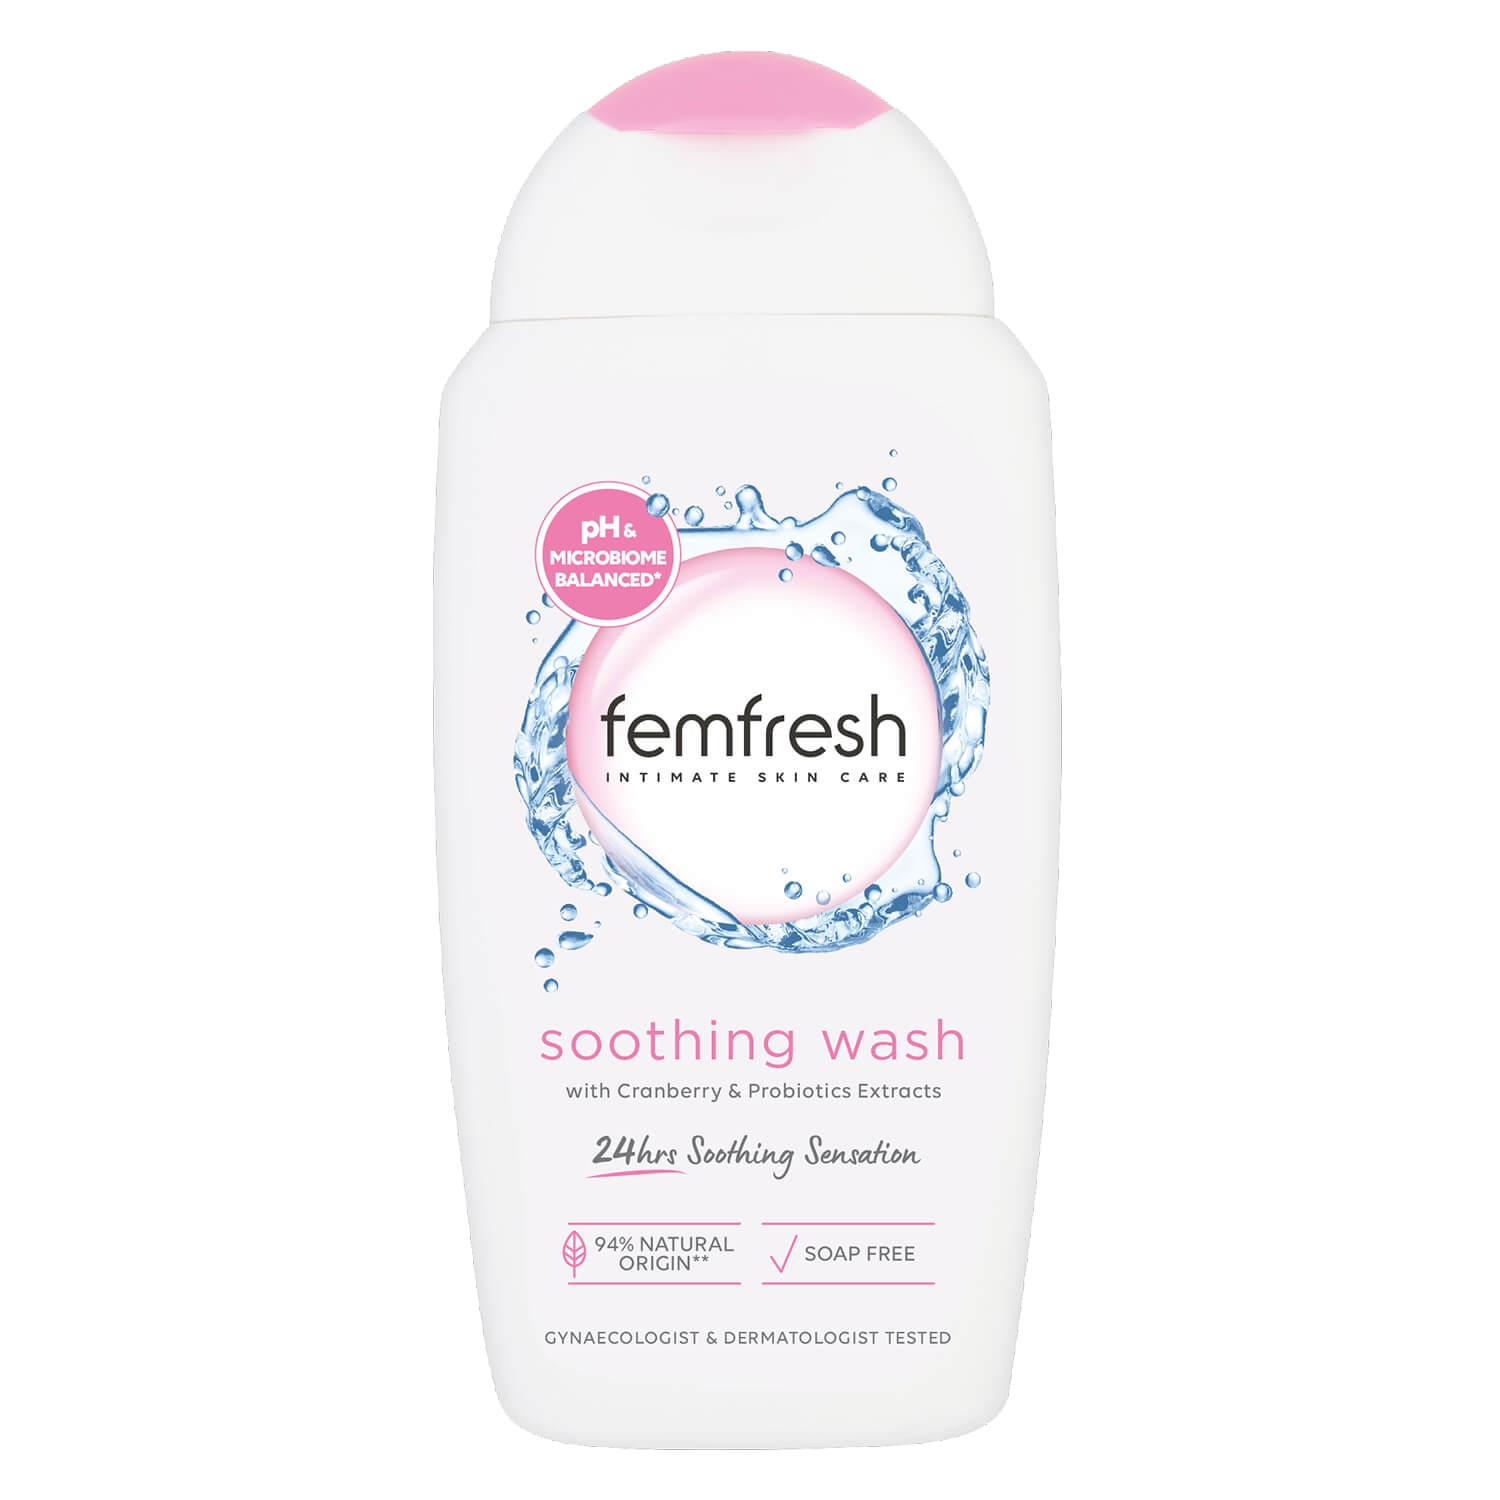 Produktbild von femfresh - soothing wash